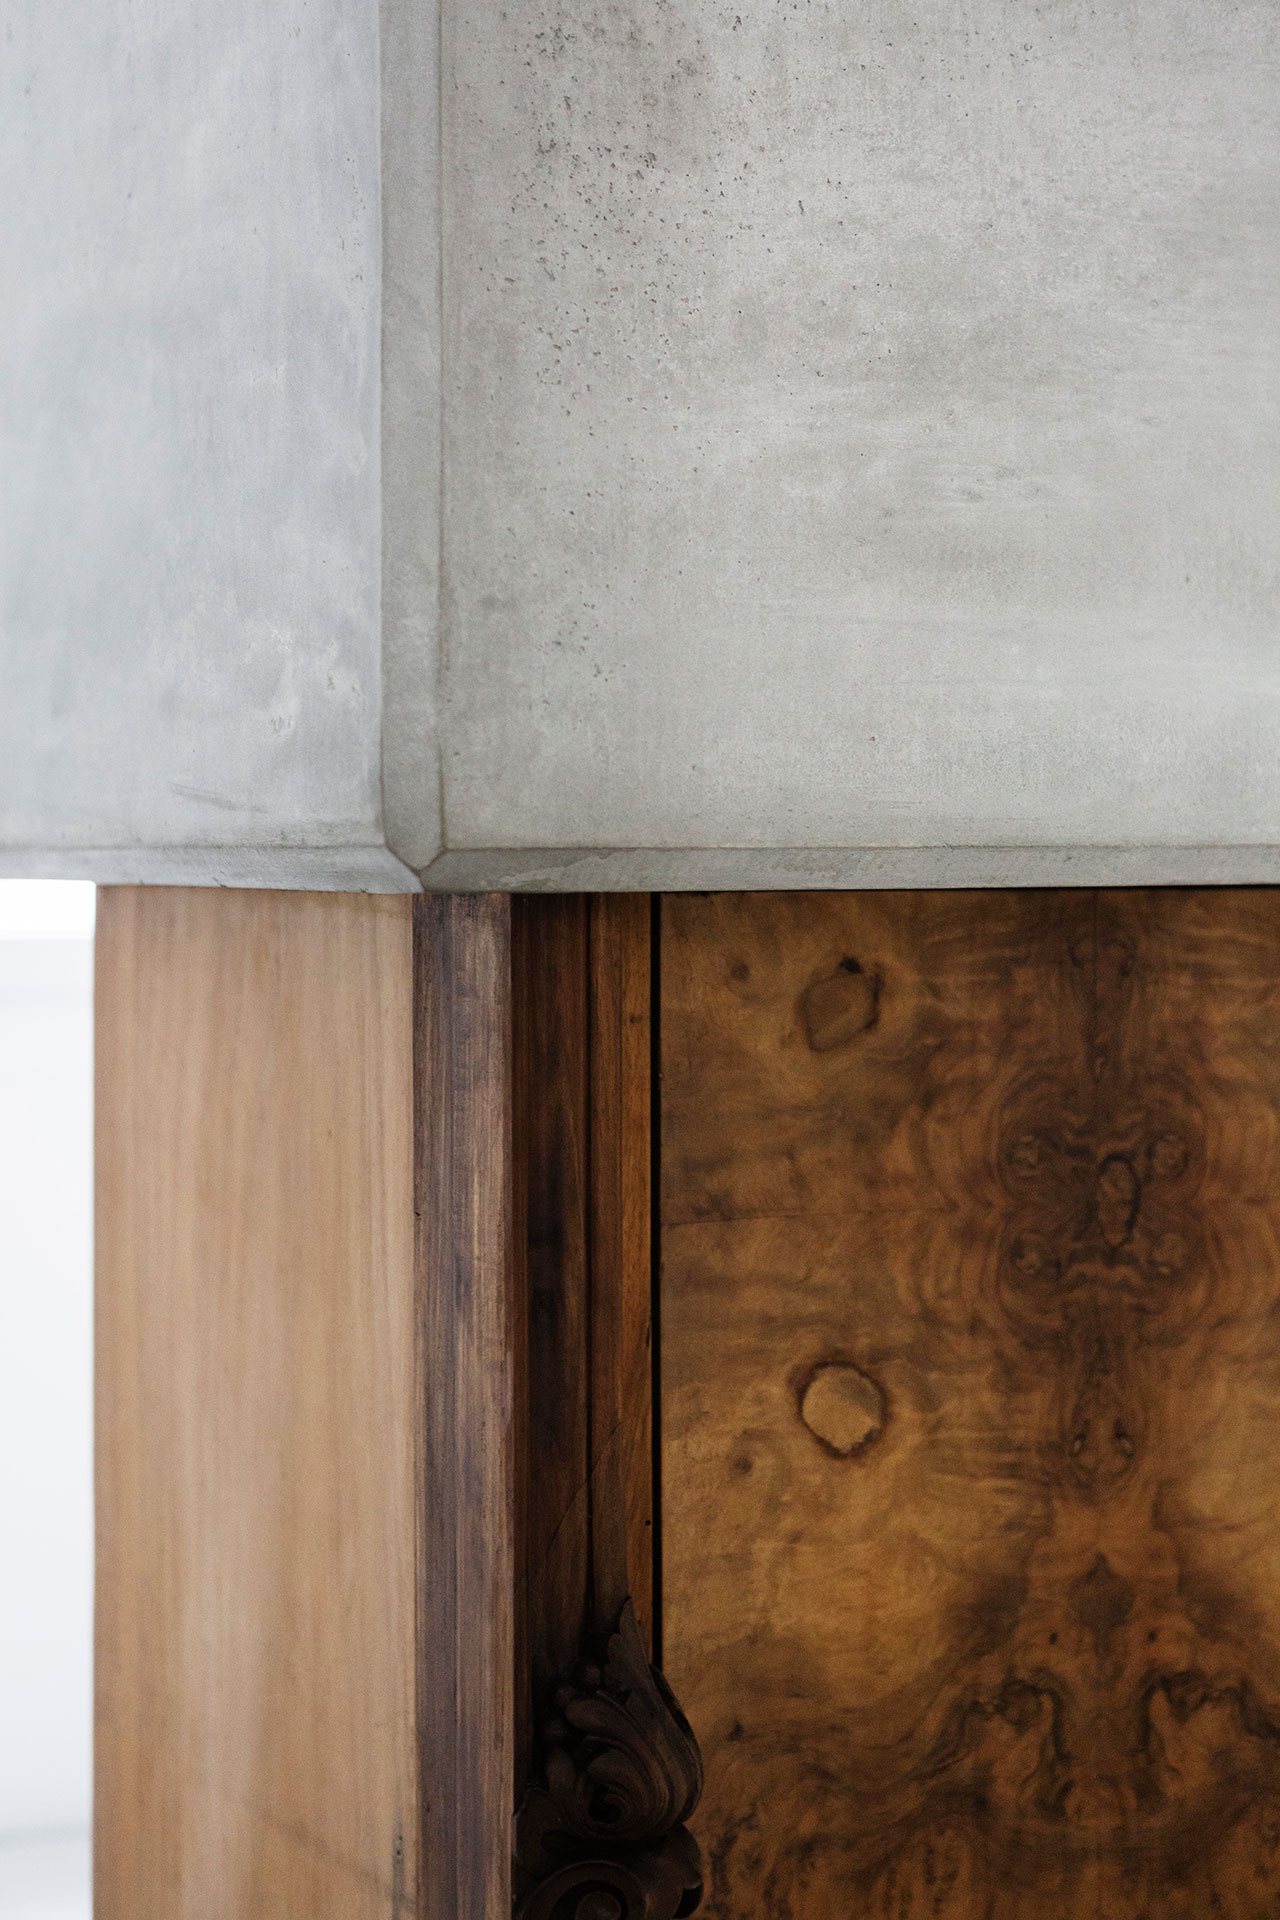 Nucleo (Piergiorgio Robino + Marzia Ricci), “Boolean” And  (Cabinet), 2017. Concrete, vintage furniture, 72 x 80 x 218h cm. Unique piece in an edition 1+1. Photo by Studio Pepe Fotografia.